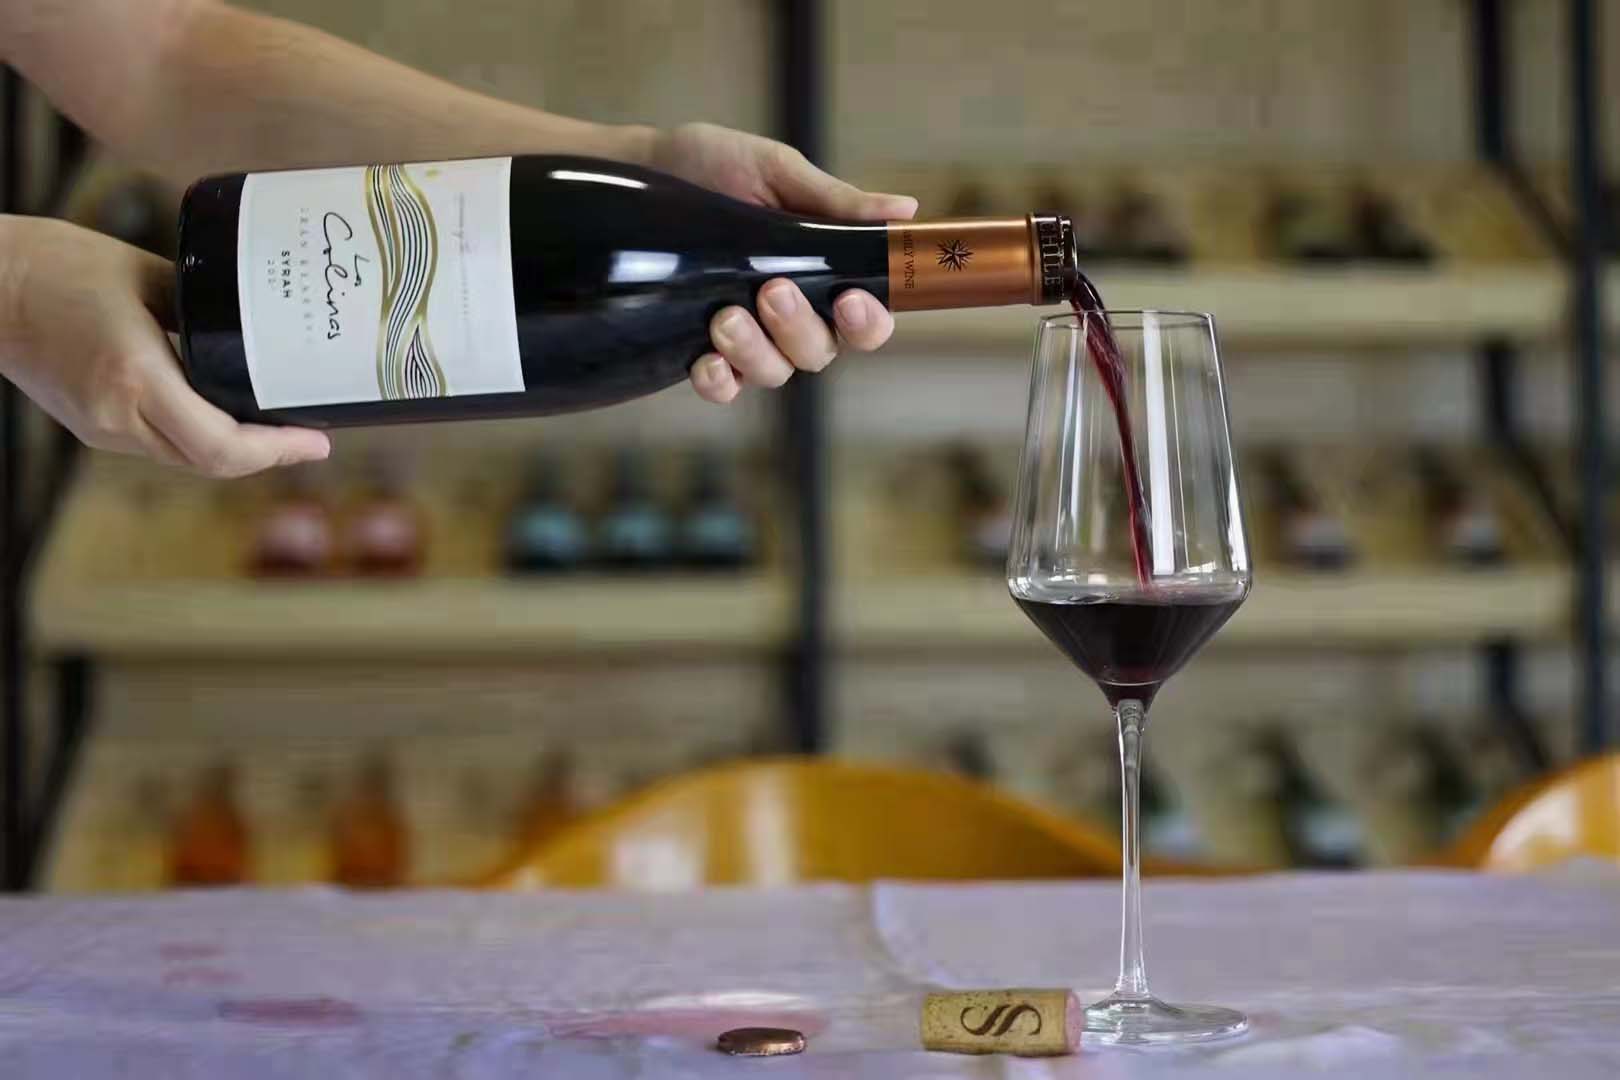 山丘西拉珍藏红葡萄酒 智利进口葡萄酒